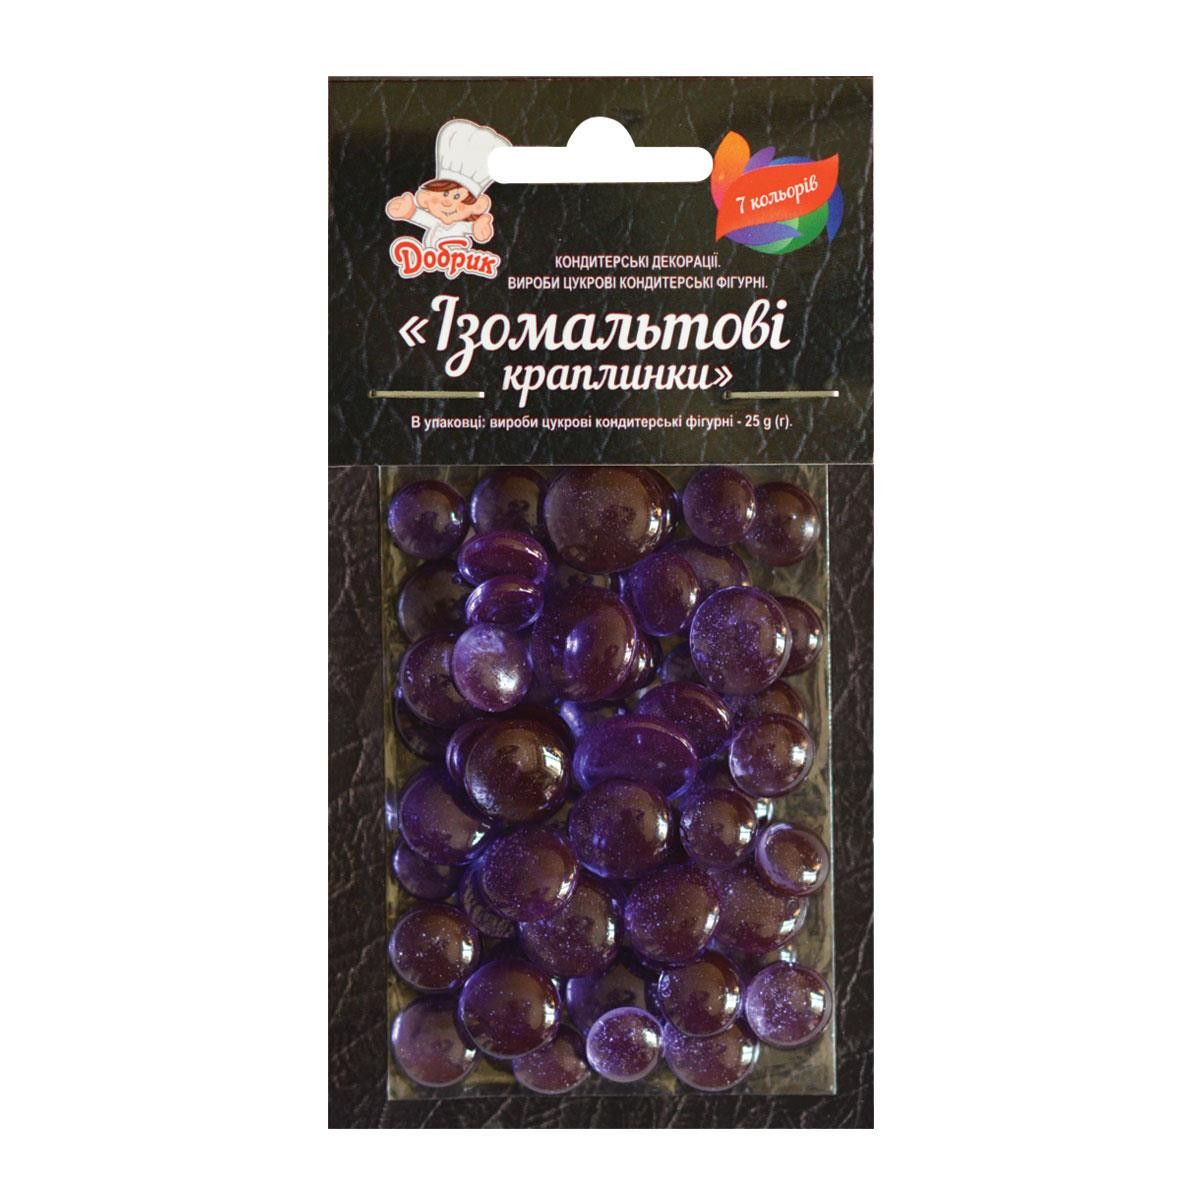 ⋗ Ізомальтові краплинки фіолетові купити в Україні ➛ CakeShop.com.ua, фото